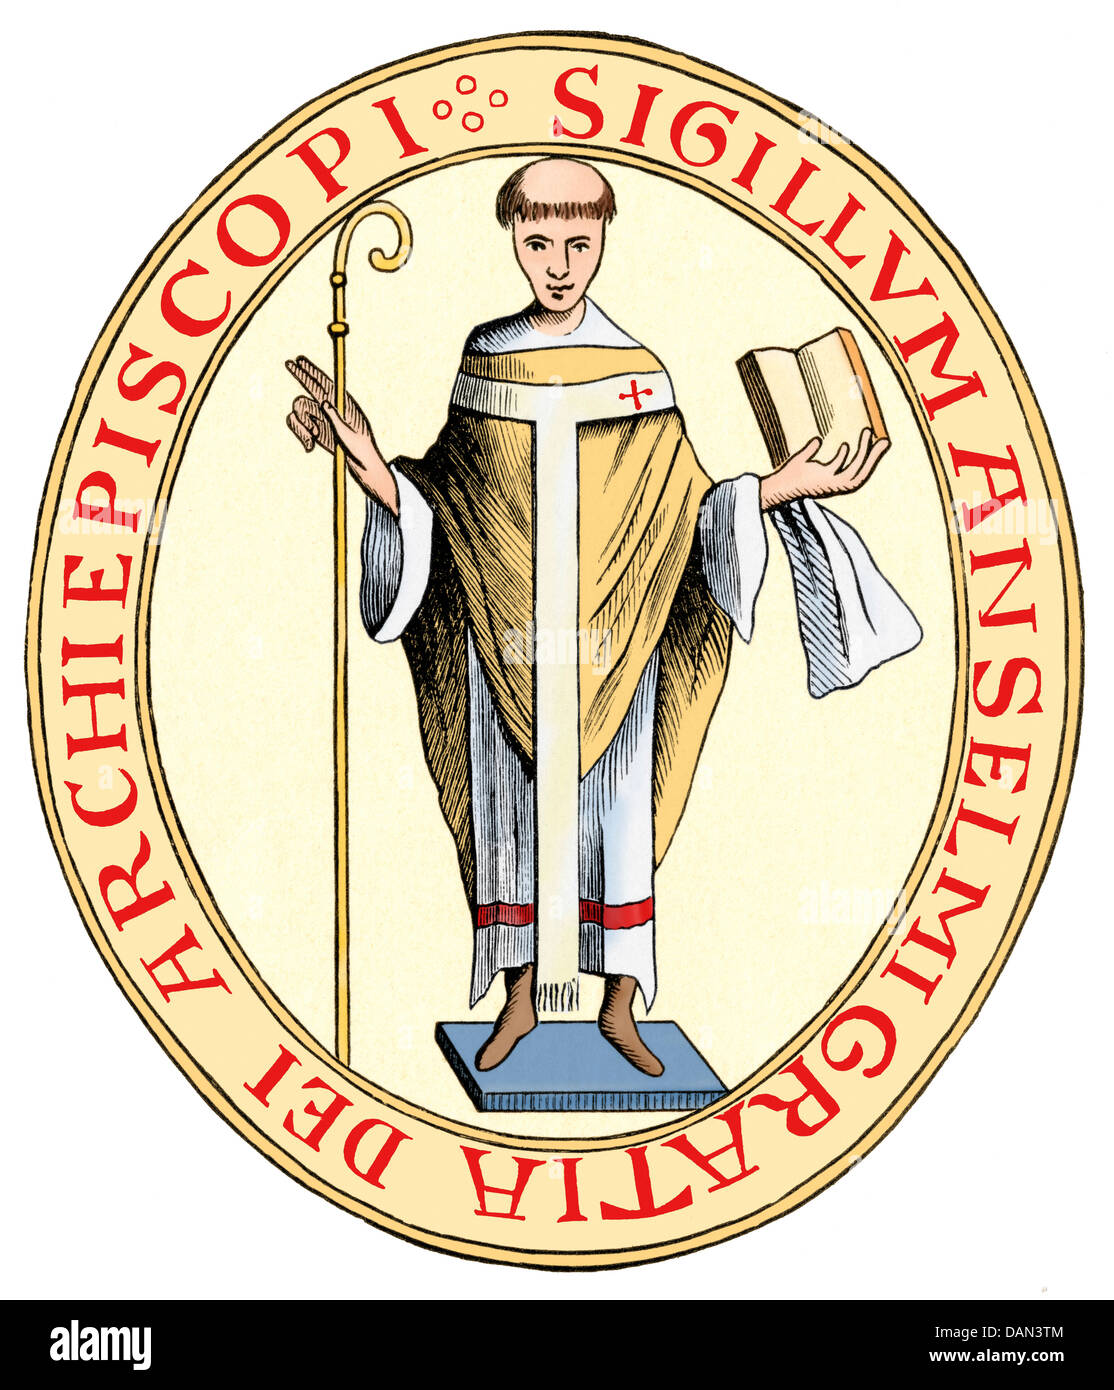 Anselme, Archevêque de Cantorbéry et moine bénédictin. Gravure sur bois couleur numérique Banque D'Images